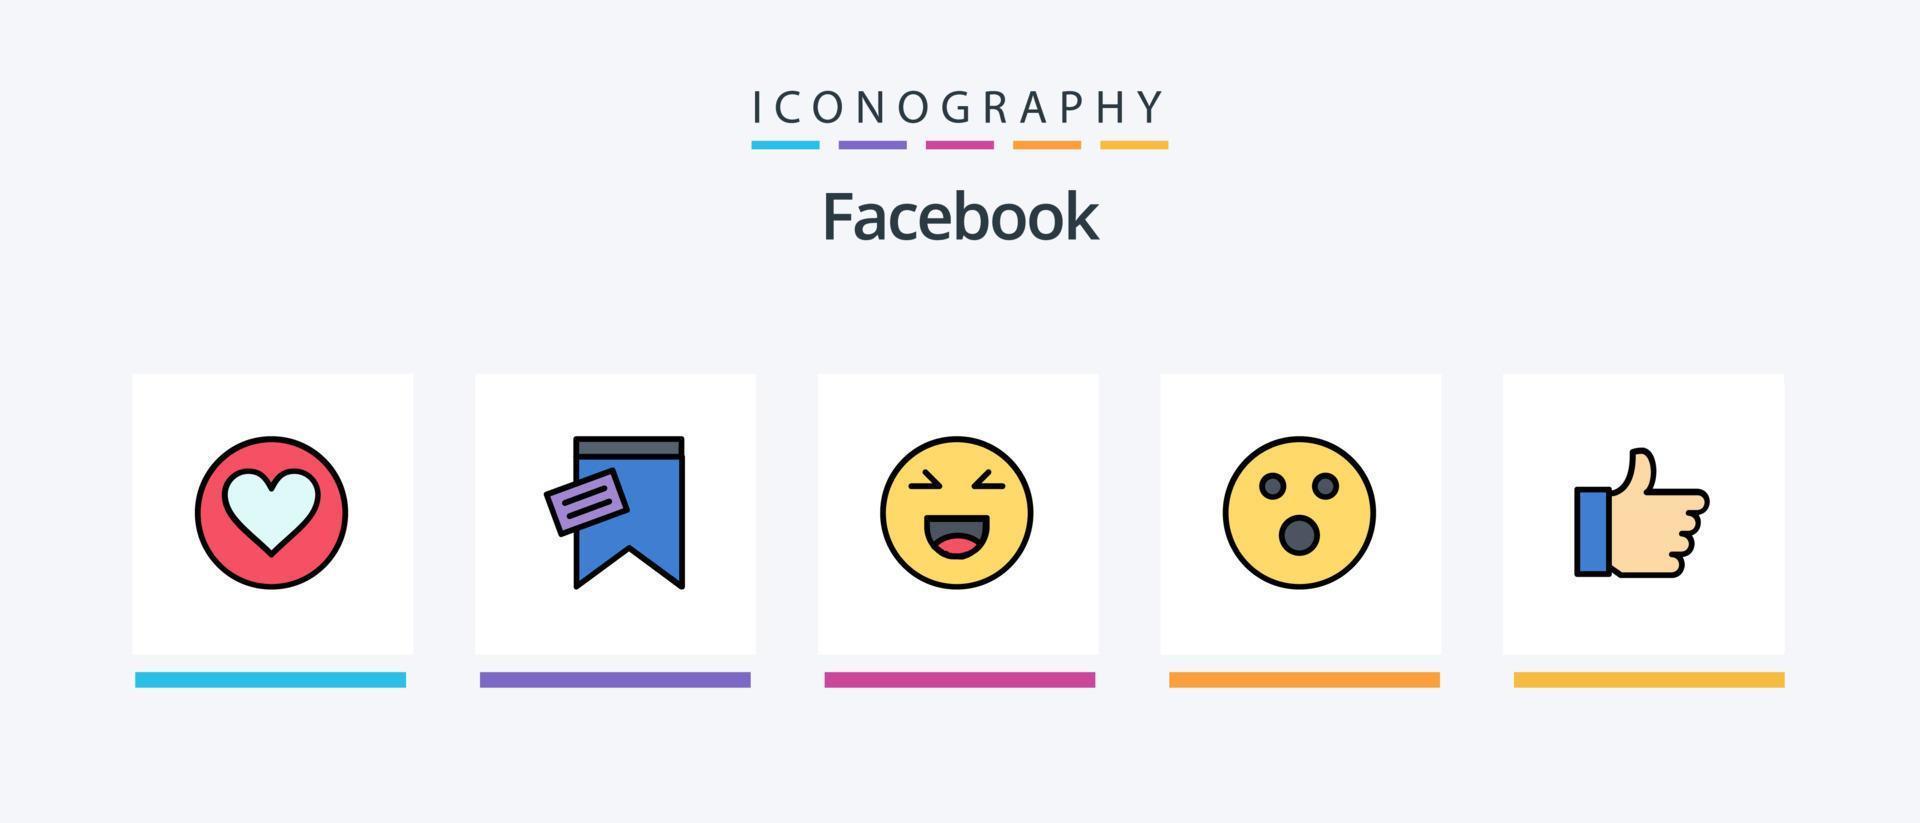 La línea de Facebook llenó el paquete de 5 íconos, incluido Me gusta. fuerza. alerta. charlando charlar. diseño de iconos creativos vector